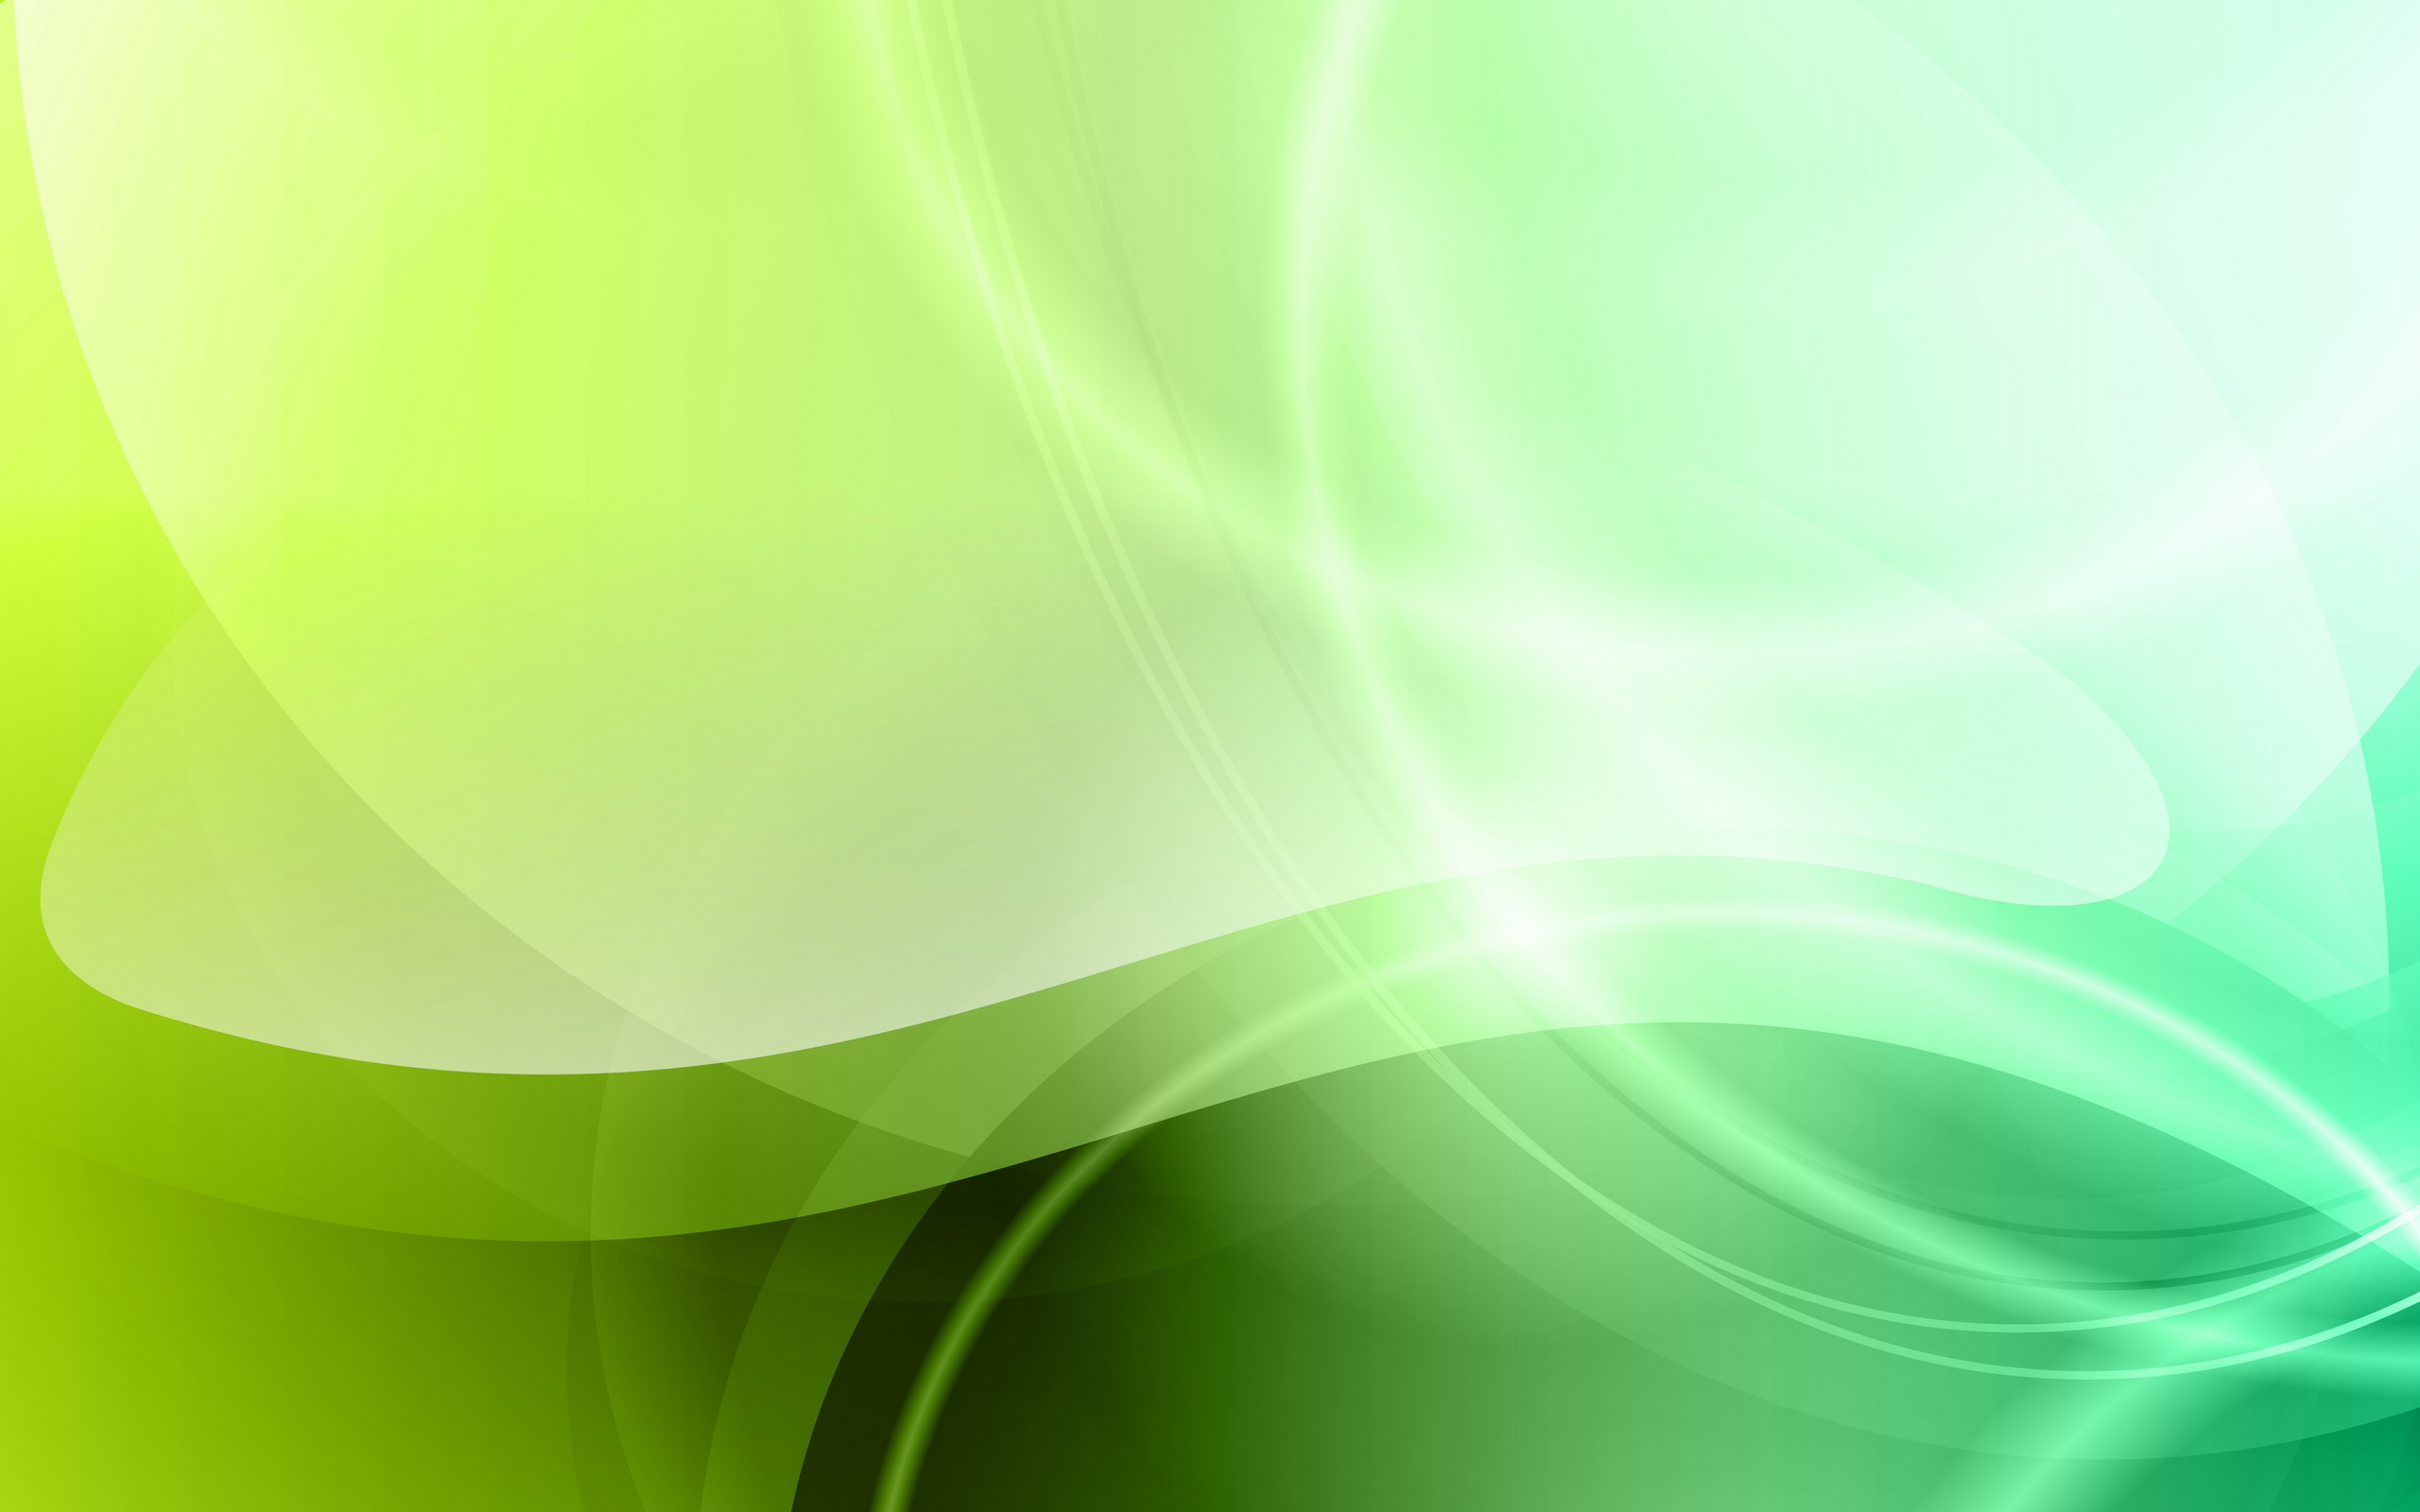 Artistic Green HD Wallpaper: Với hình nền Artistic Green HD Wallpaper, bạn sẽ có cảm giác như đang bước vào một vườn cây xanh mát. Sắc xanh trong hình nền thể hiện sự tươi mới và sức sống, giúp bạn thư giãn và cảm thấy dễ chịu. Hình nền tạo nên sự tinh tế và sáng tạo, phù hợp với mọi loại điện thoại, máy tính bảng hay desktop của bạn.